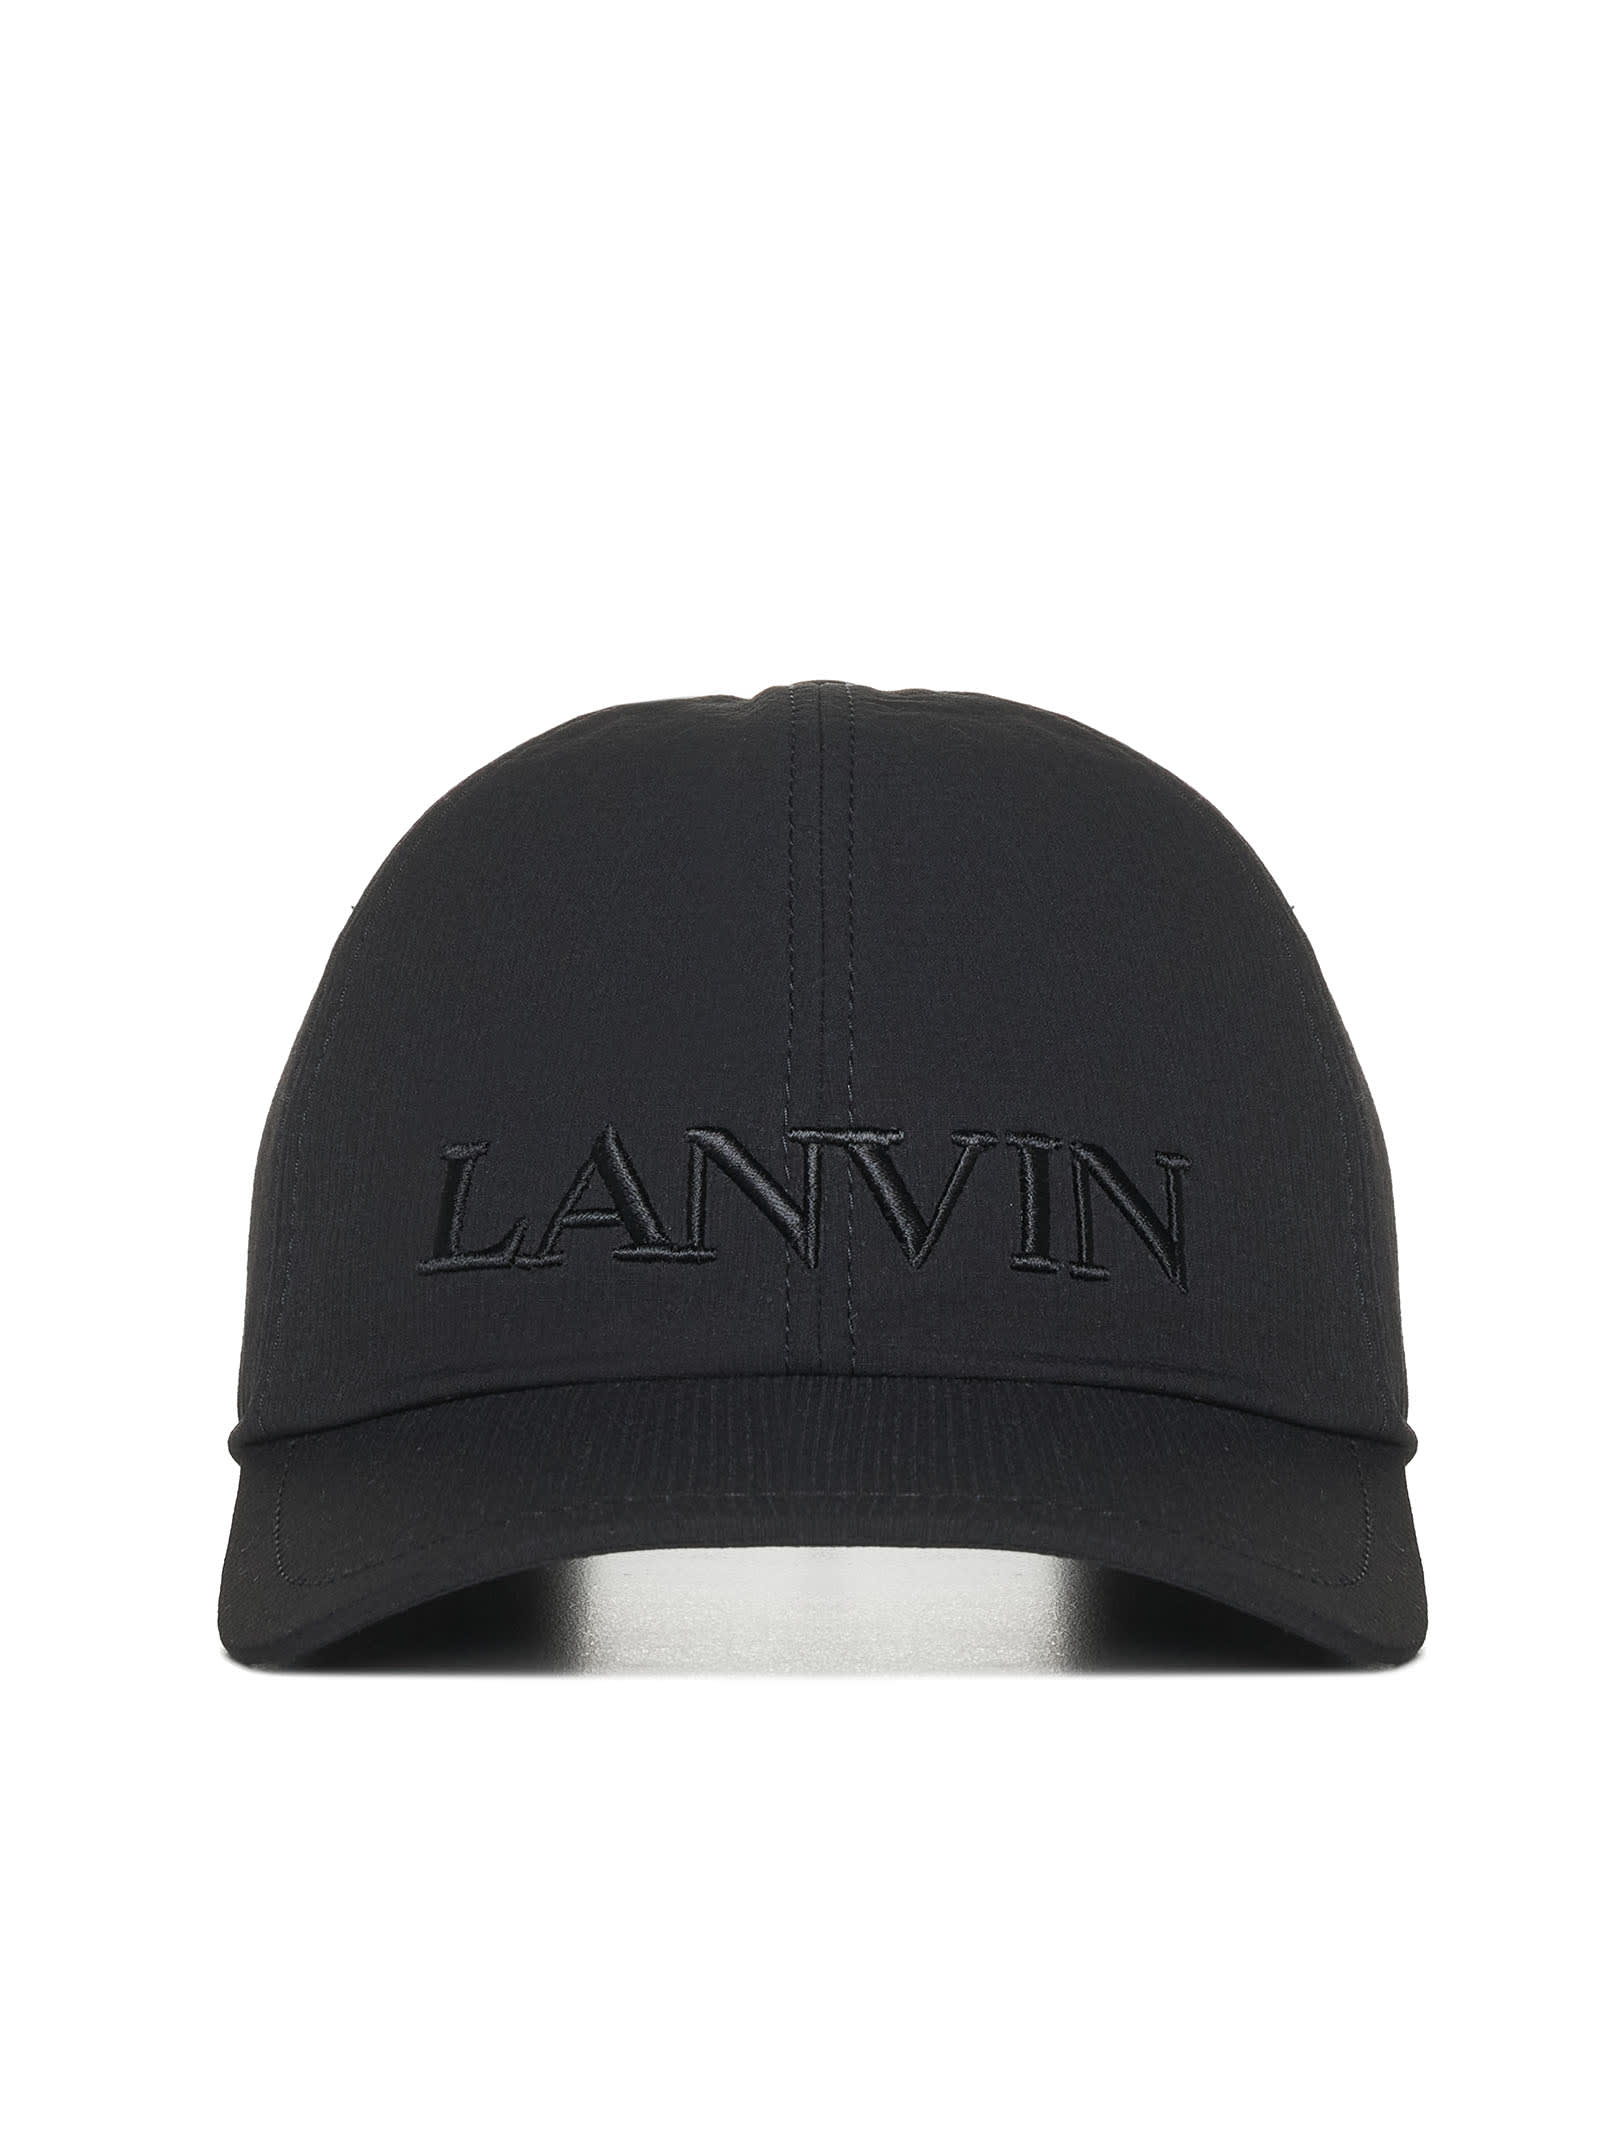 LANVIN HAT